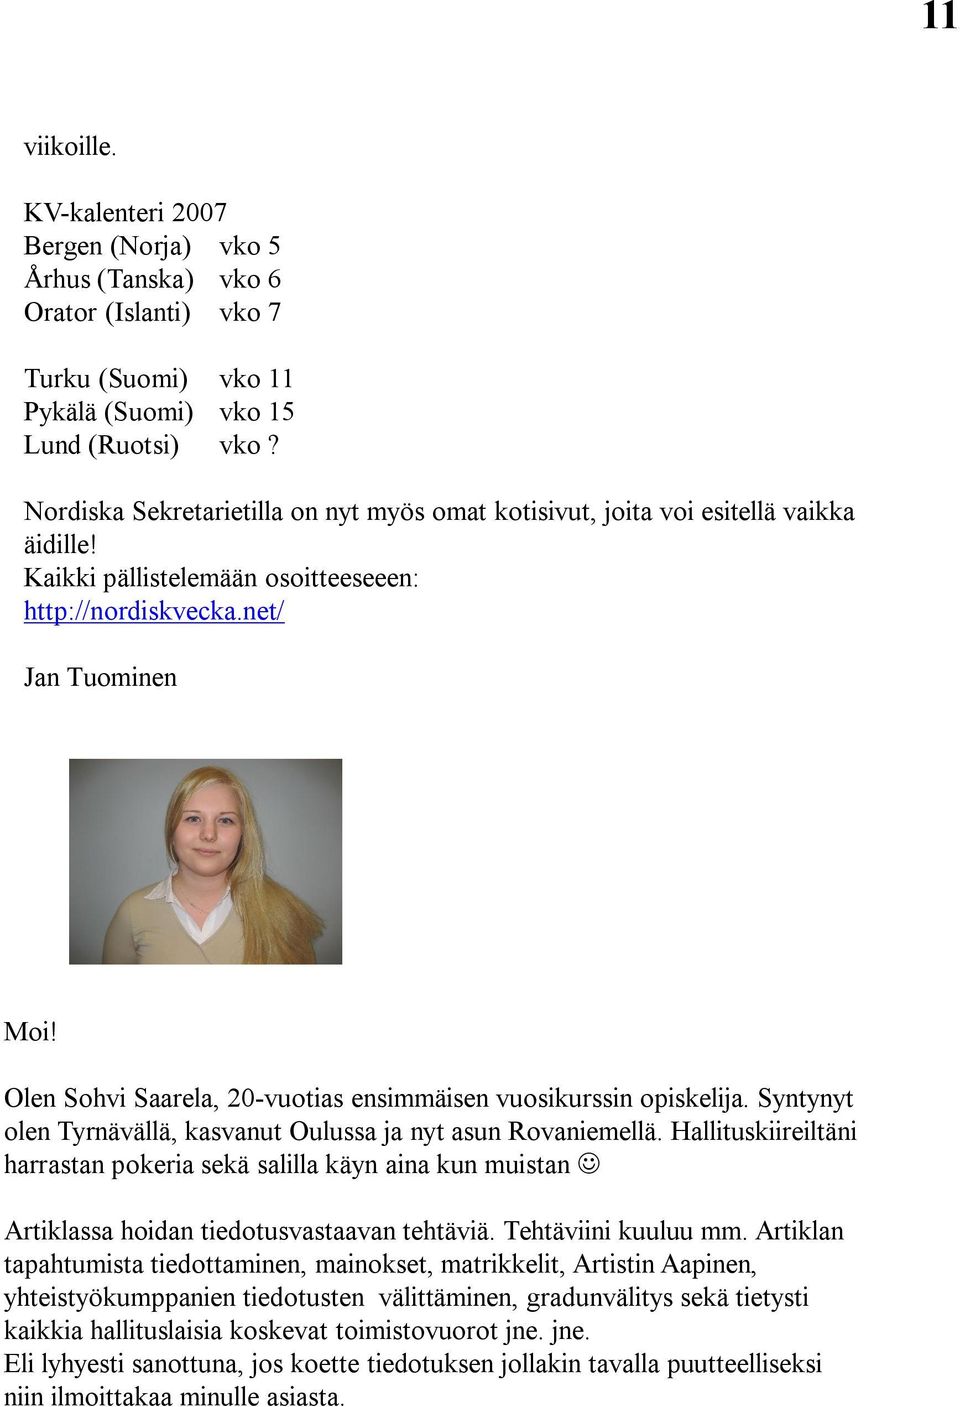 Olen Sohvi Saarela, 20 vuotias ensimmäisen vuosikurssin opiskelija. Syntynyt olen Tyrnävällä, kasvanut Oulussa ja nyt asun Rovaniemellä.